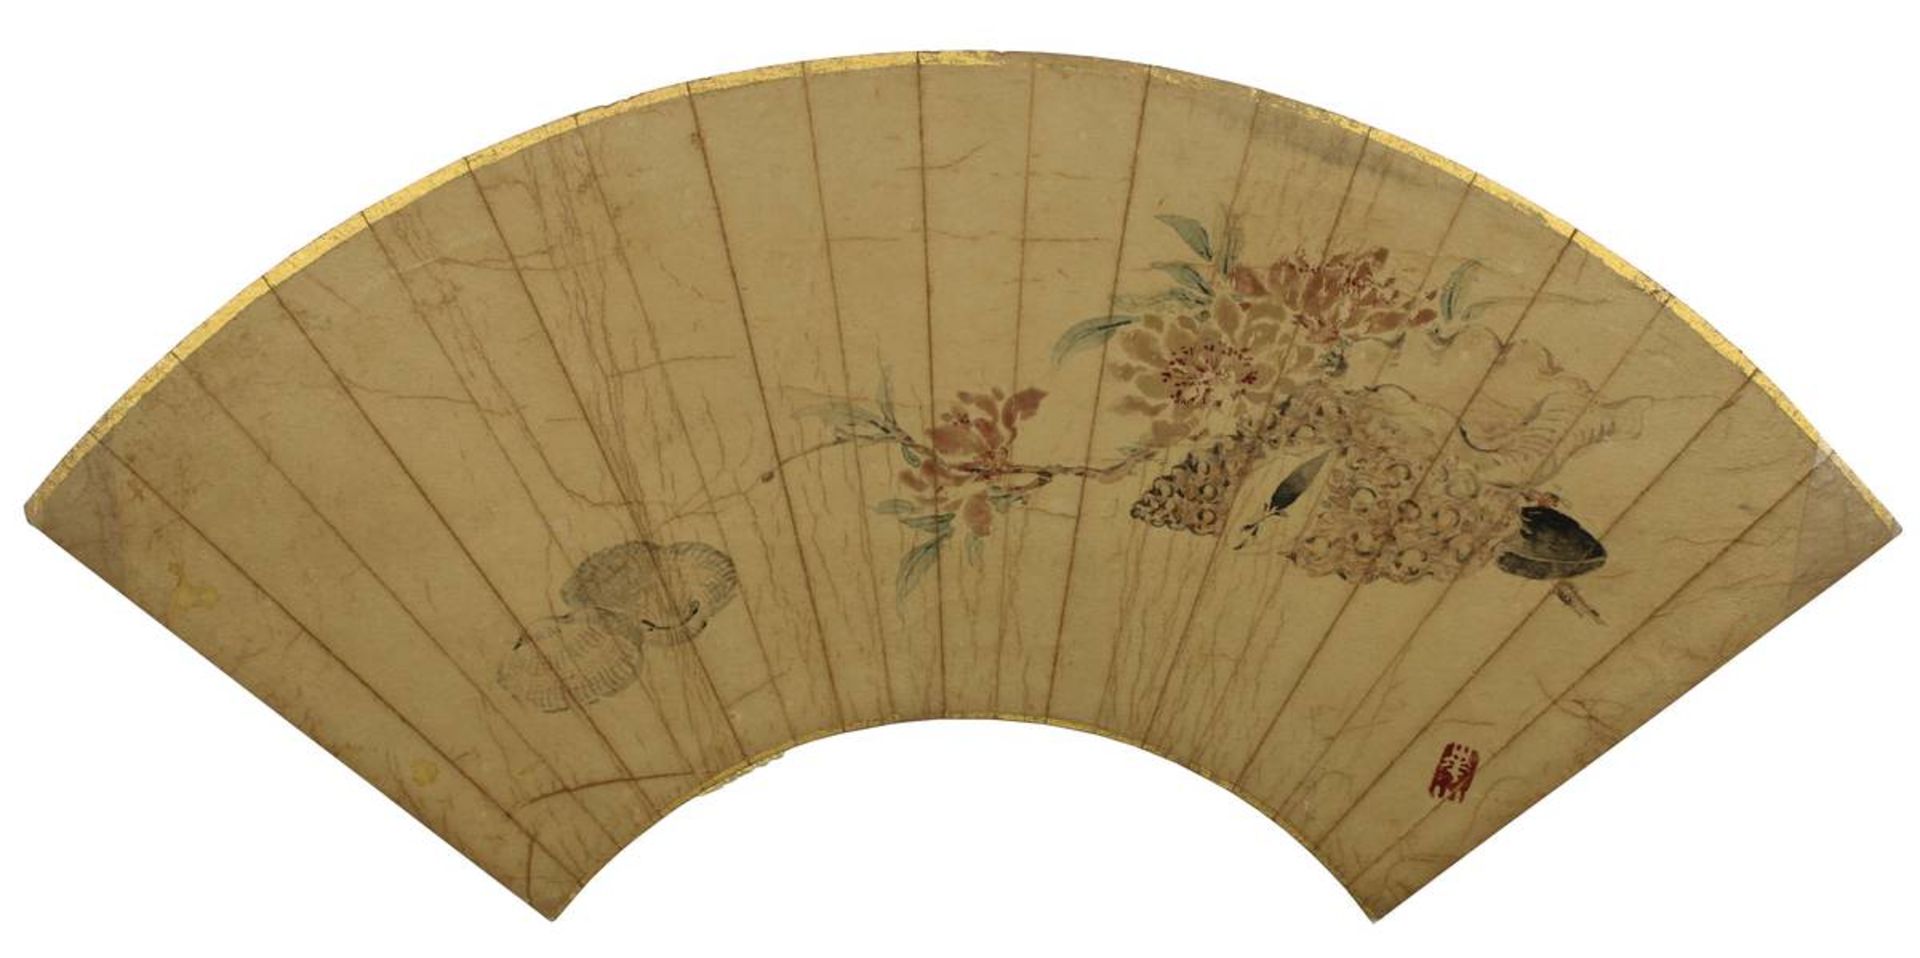 2 bemalte japanische Faltfächerblätter, jew. unter Folie mit Fotoecken auf Karton montiert, Karton - Image 3 of 3